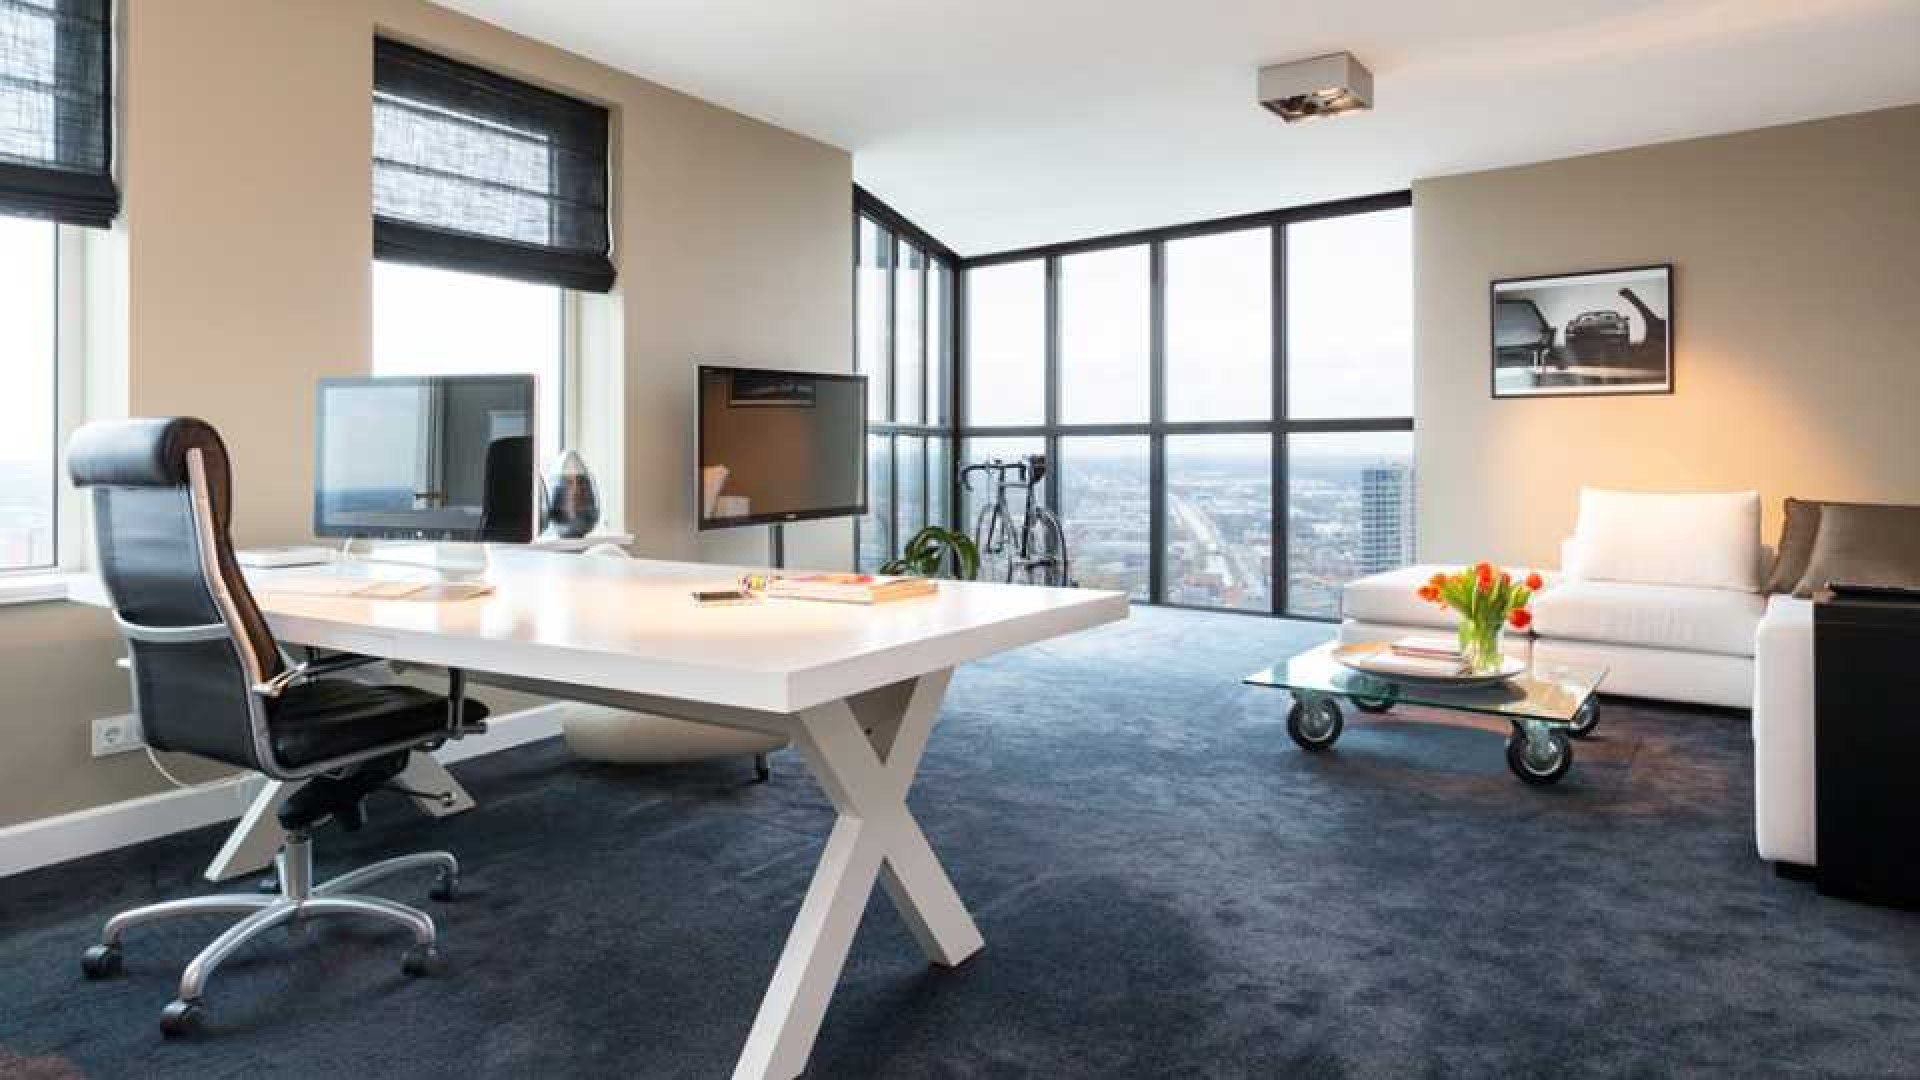 Amanda Krabbe en haar man Harrie Kolen zetten hun luxe penthouse in stille verkoop. Zie foto's 16